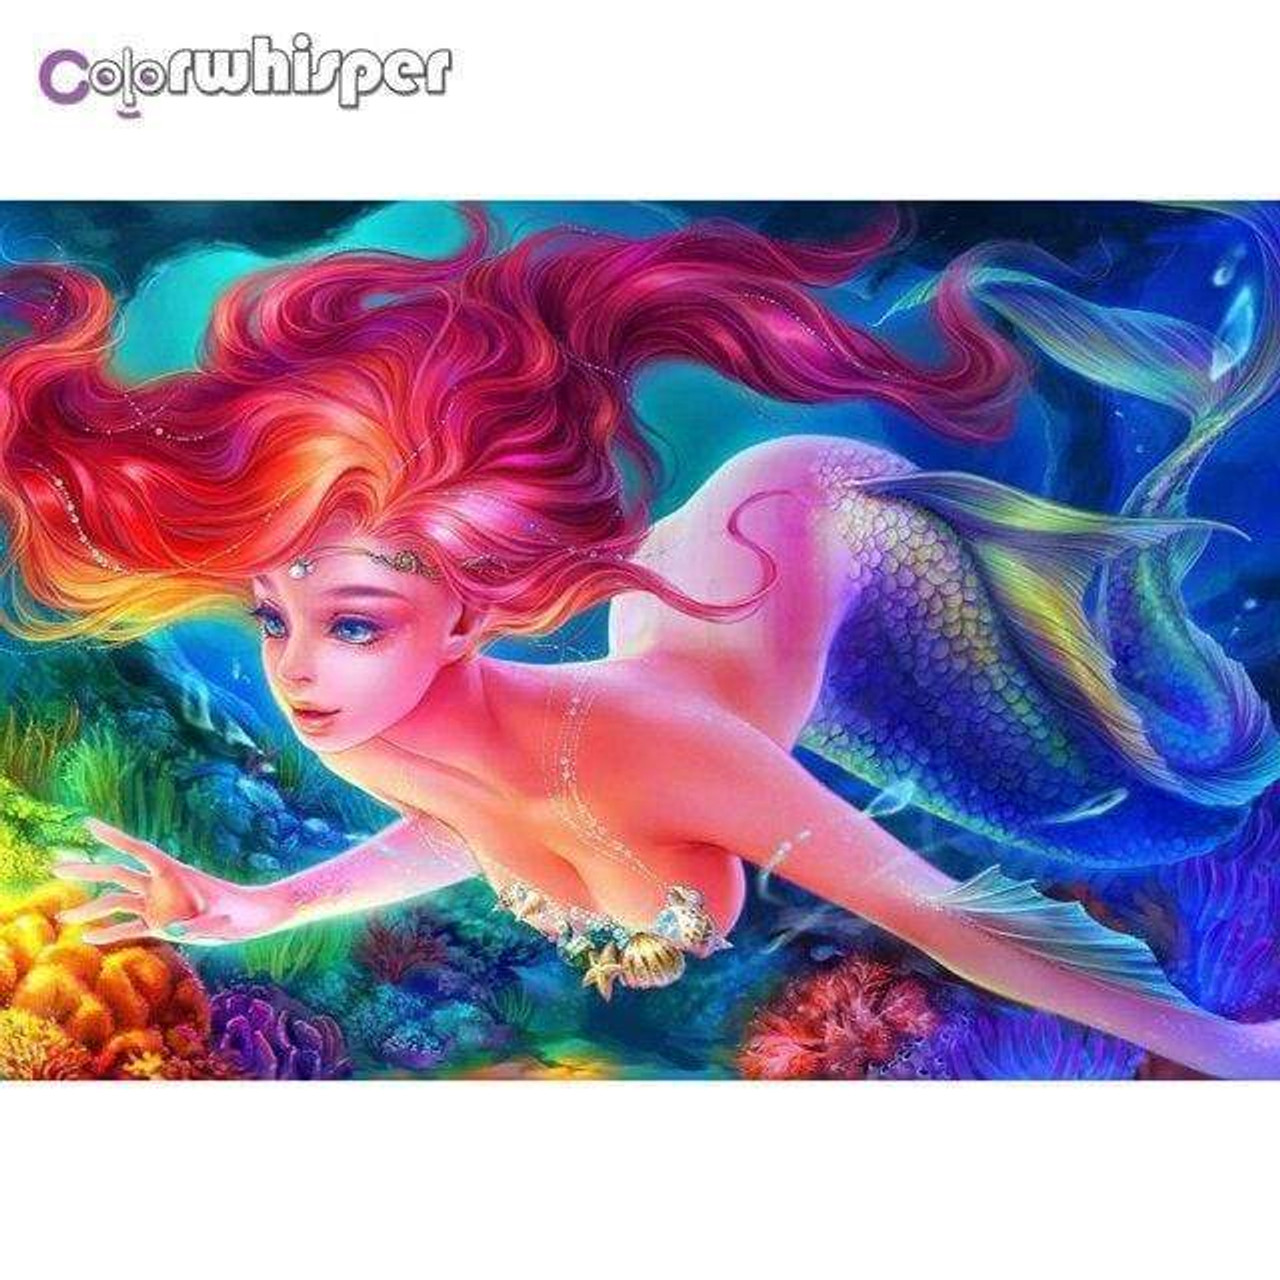  Praying Mermaid Diamond Painting - Pink Long Hair